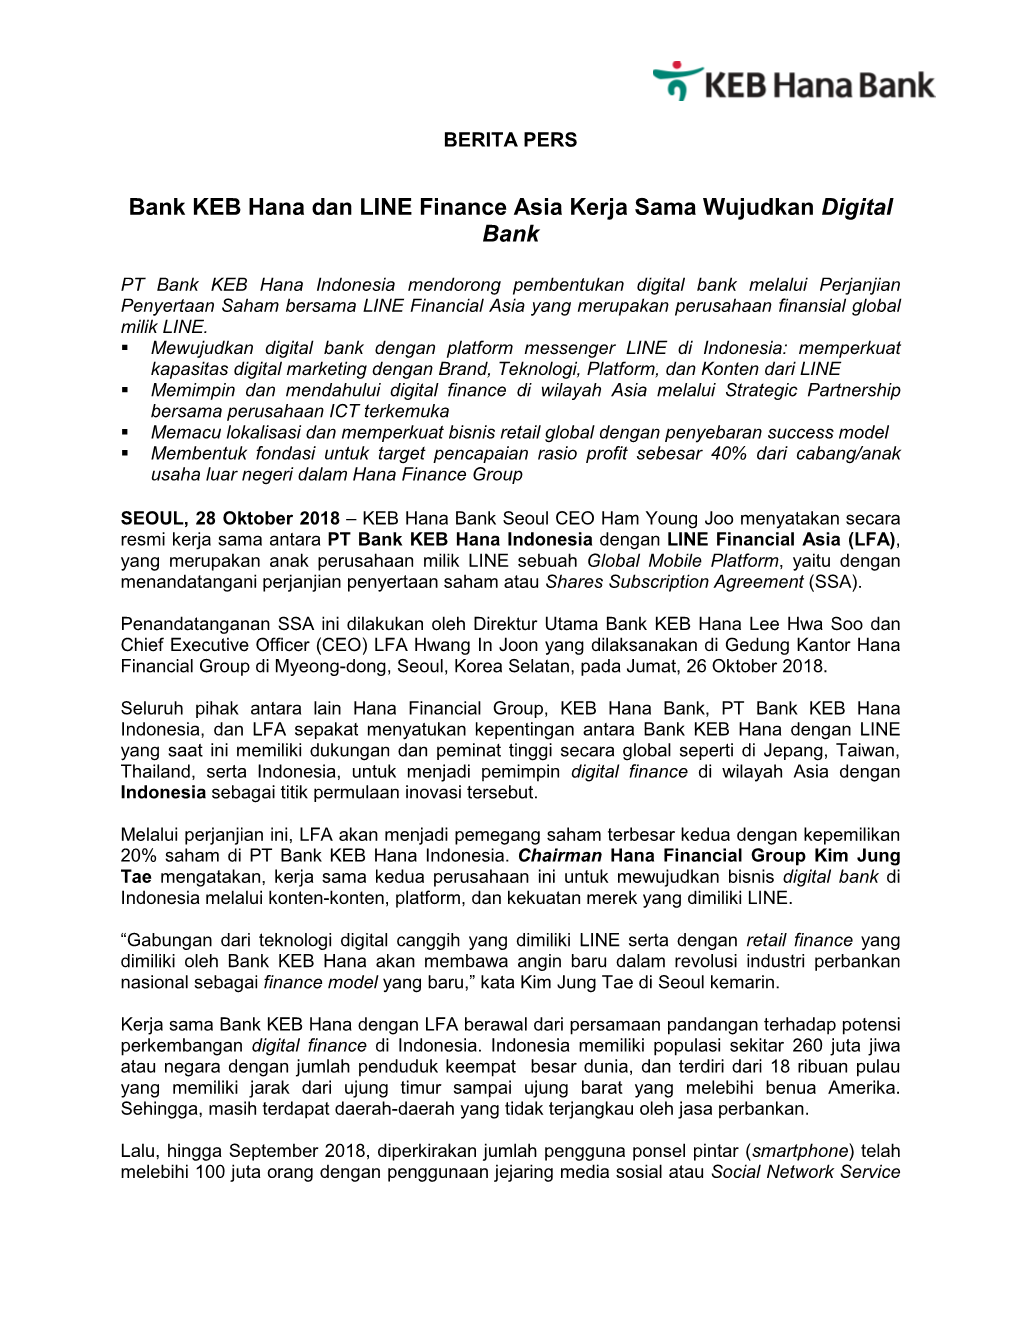 Bank KEB Hana Dan LINE Finance Asia Kerja Sama Wujudkan Digital Bank